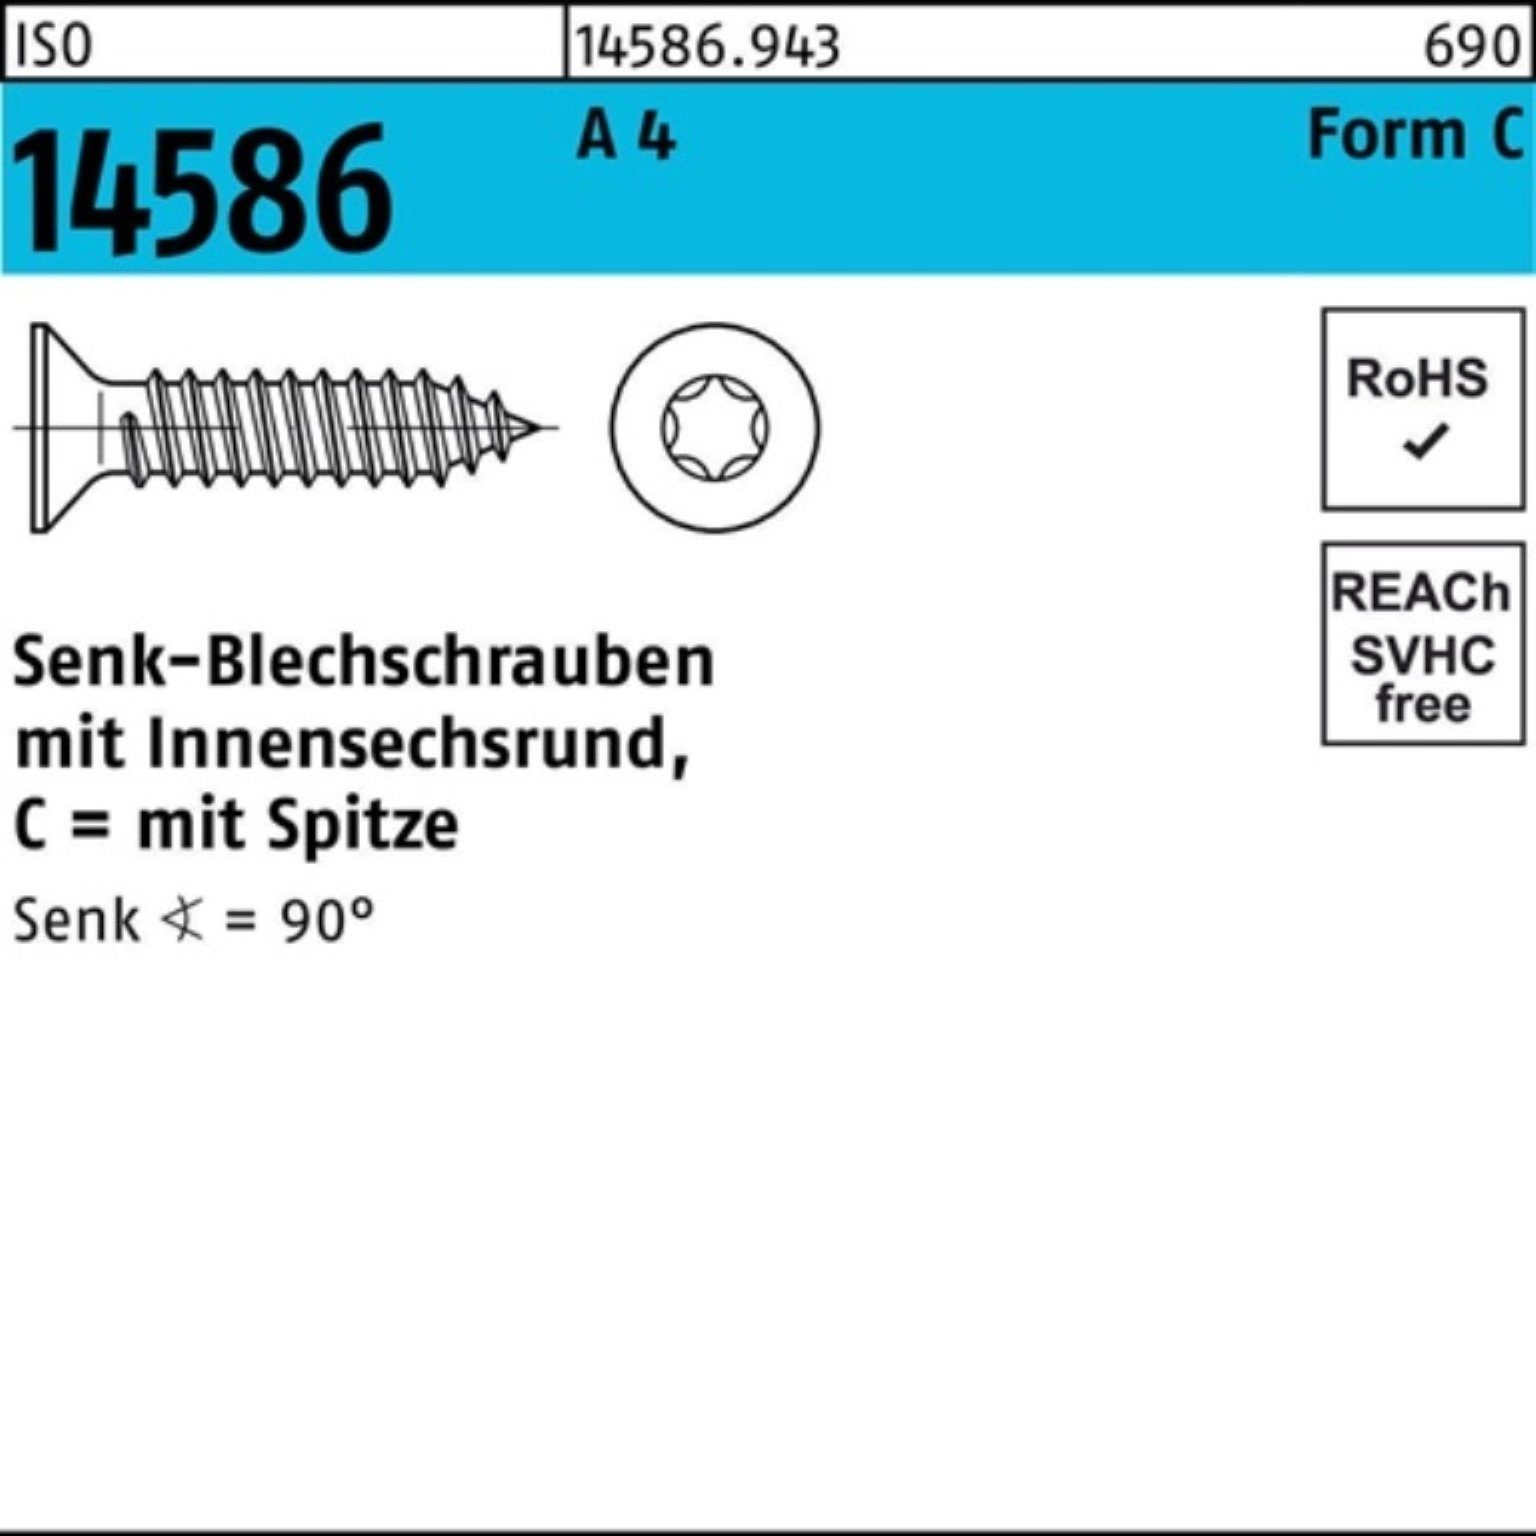 Reyher Schraube 500er Pack Senkblechschraube ISO 14586 ISR/Spitze 6,3x 19-T30 A 4 500